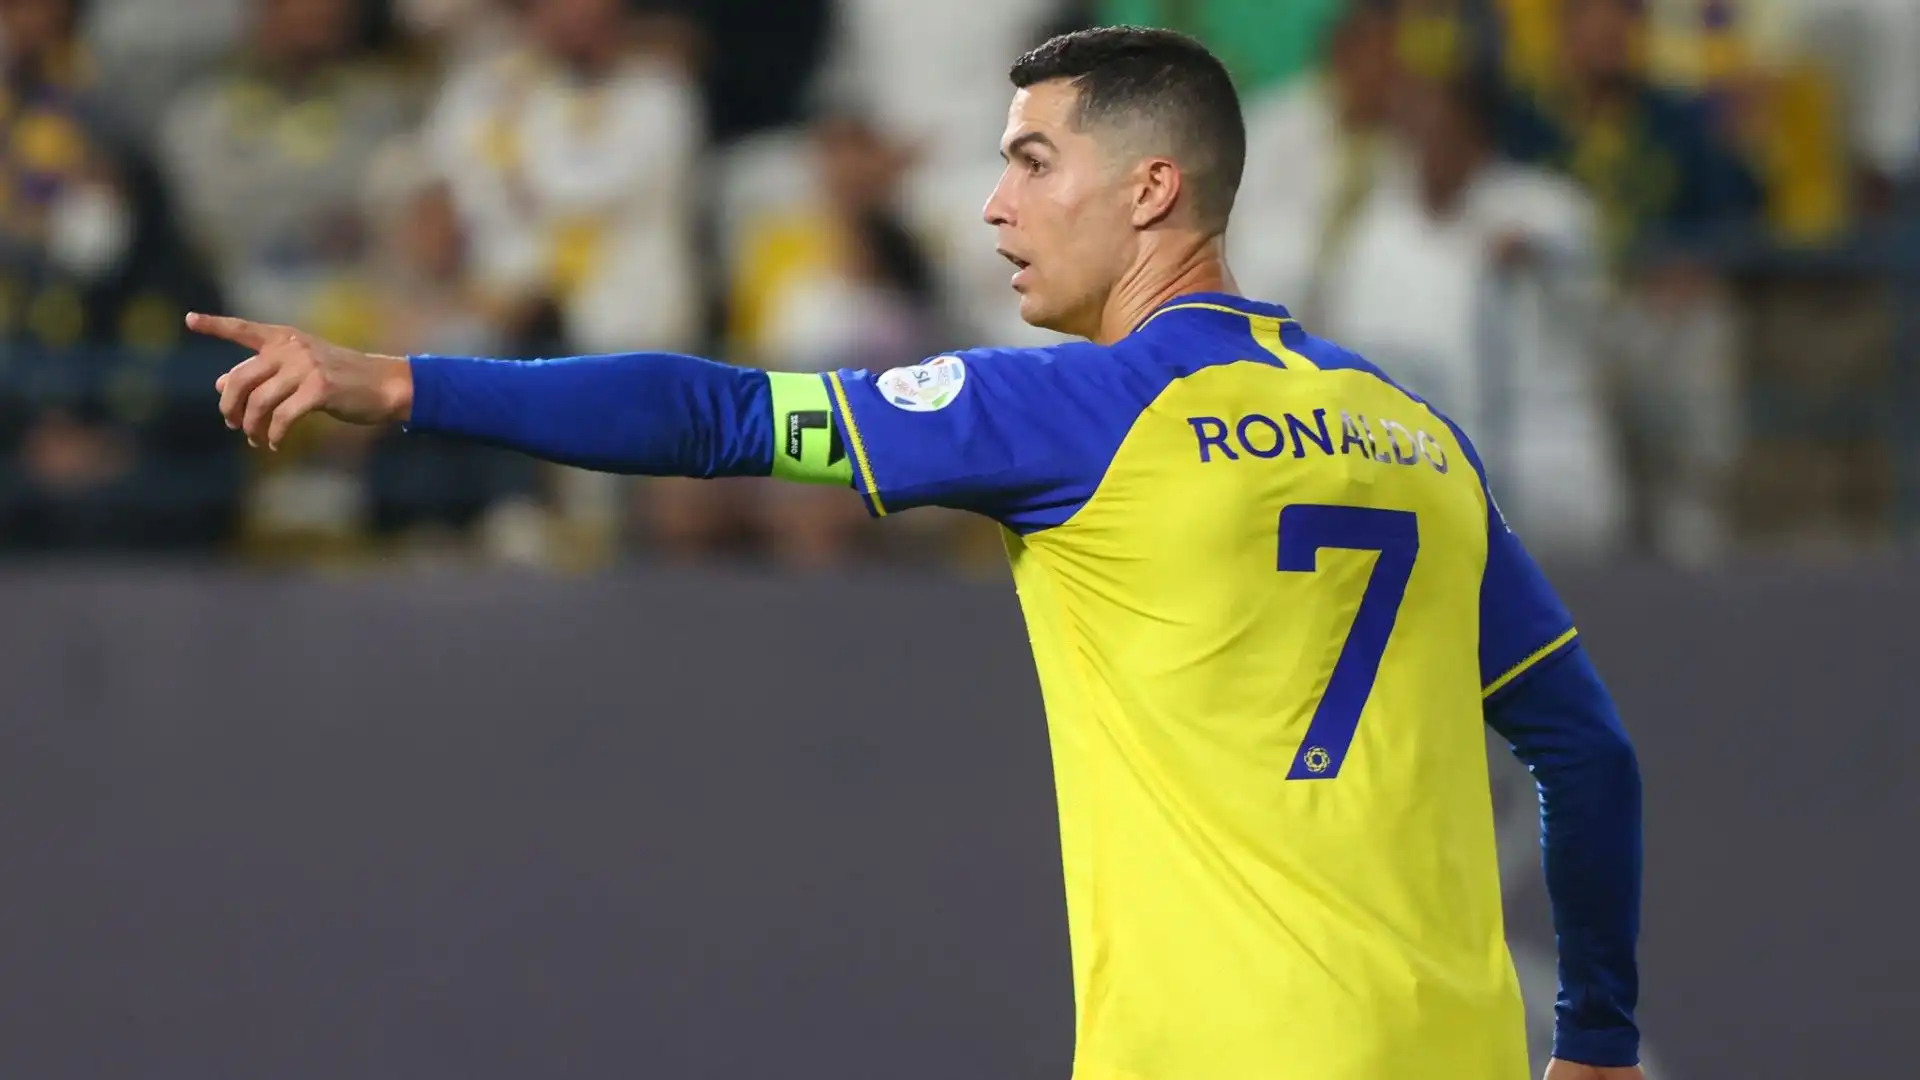 Cristiano Ronaldo si sente bene ed è la stella del campionato arabo: vuole aggiungere un anno al suo contratto